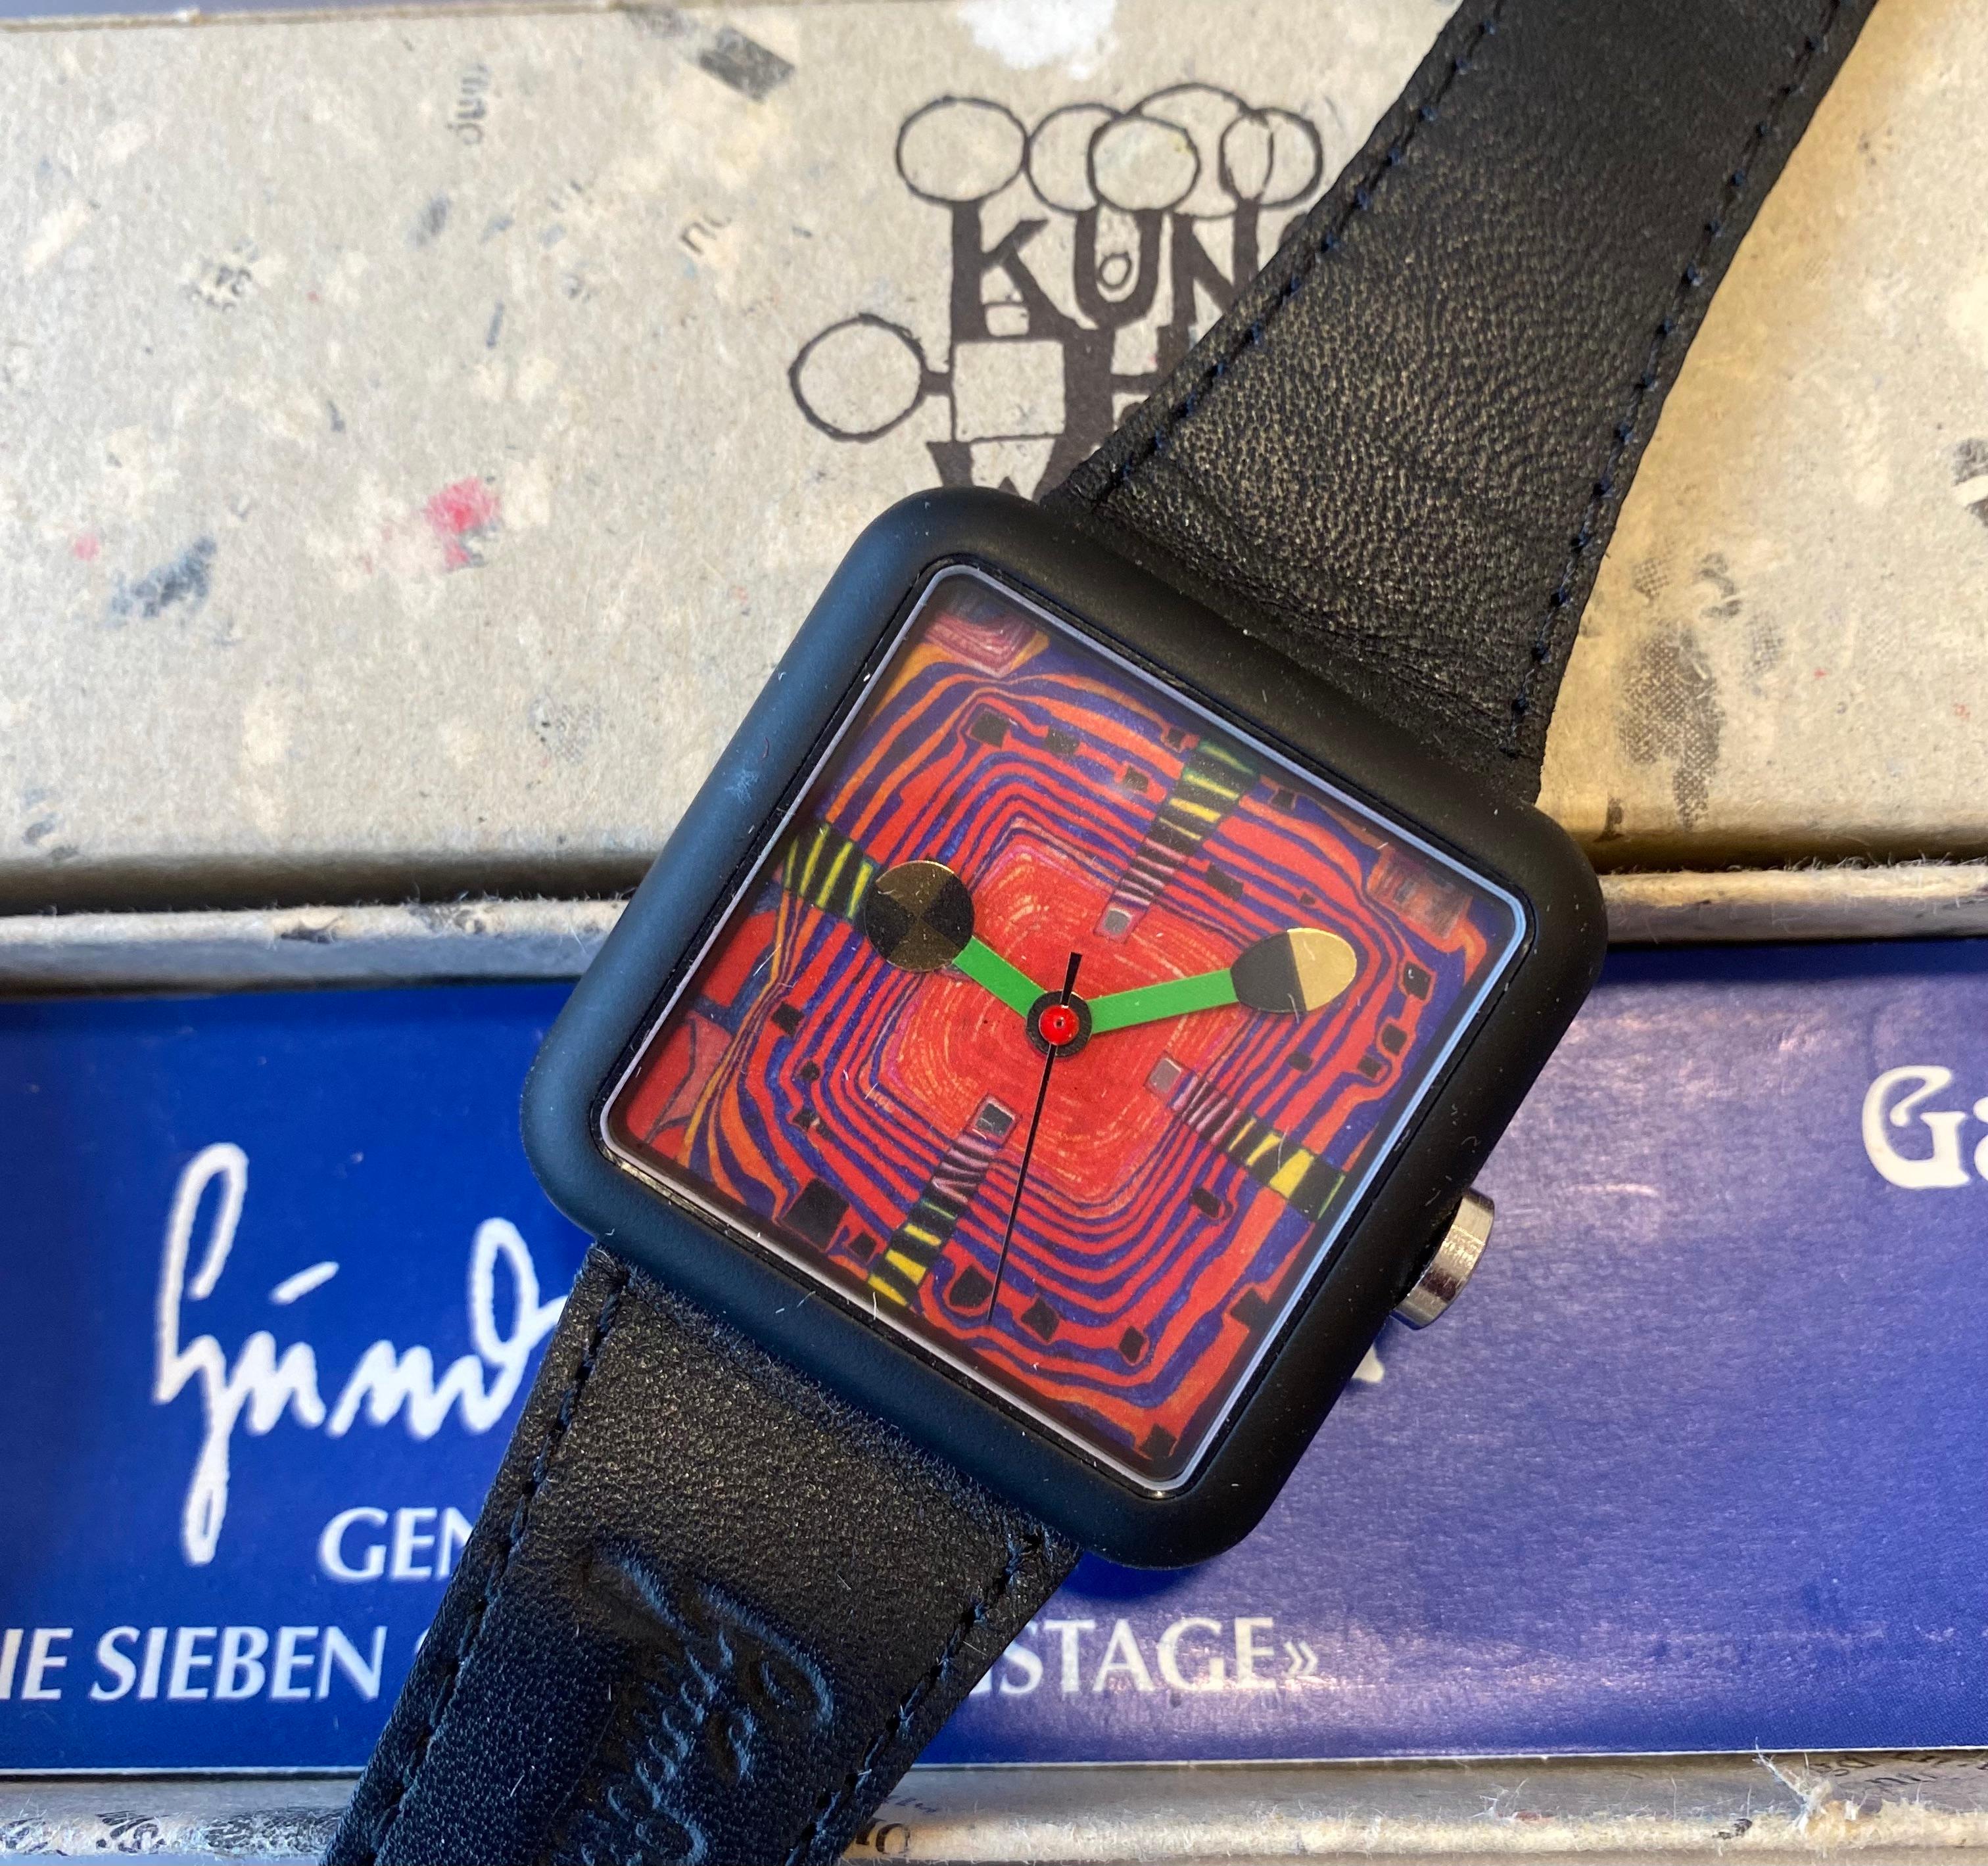 Montre conçue par l'artiste autrichien Hundertwasser.
Montre rare, neuve de stock.
Vendu avec boîte et certificat.
Circa : 1995
Diamètre : 4 cm
Longueur de la sangle : 24 cm.